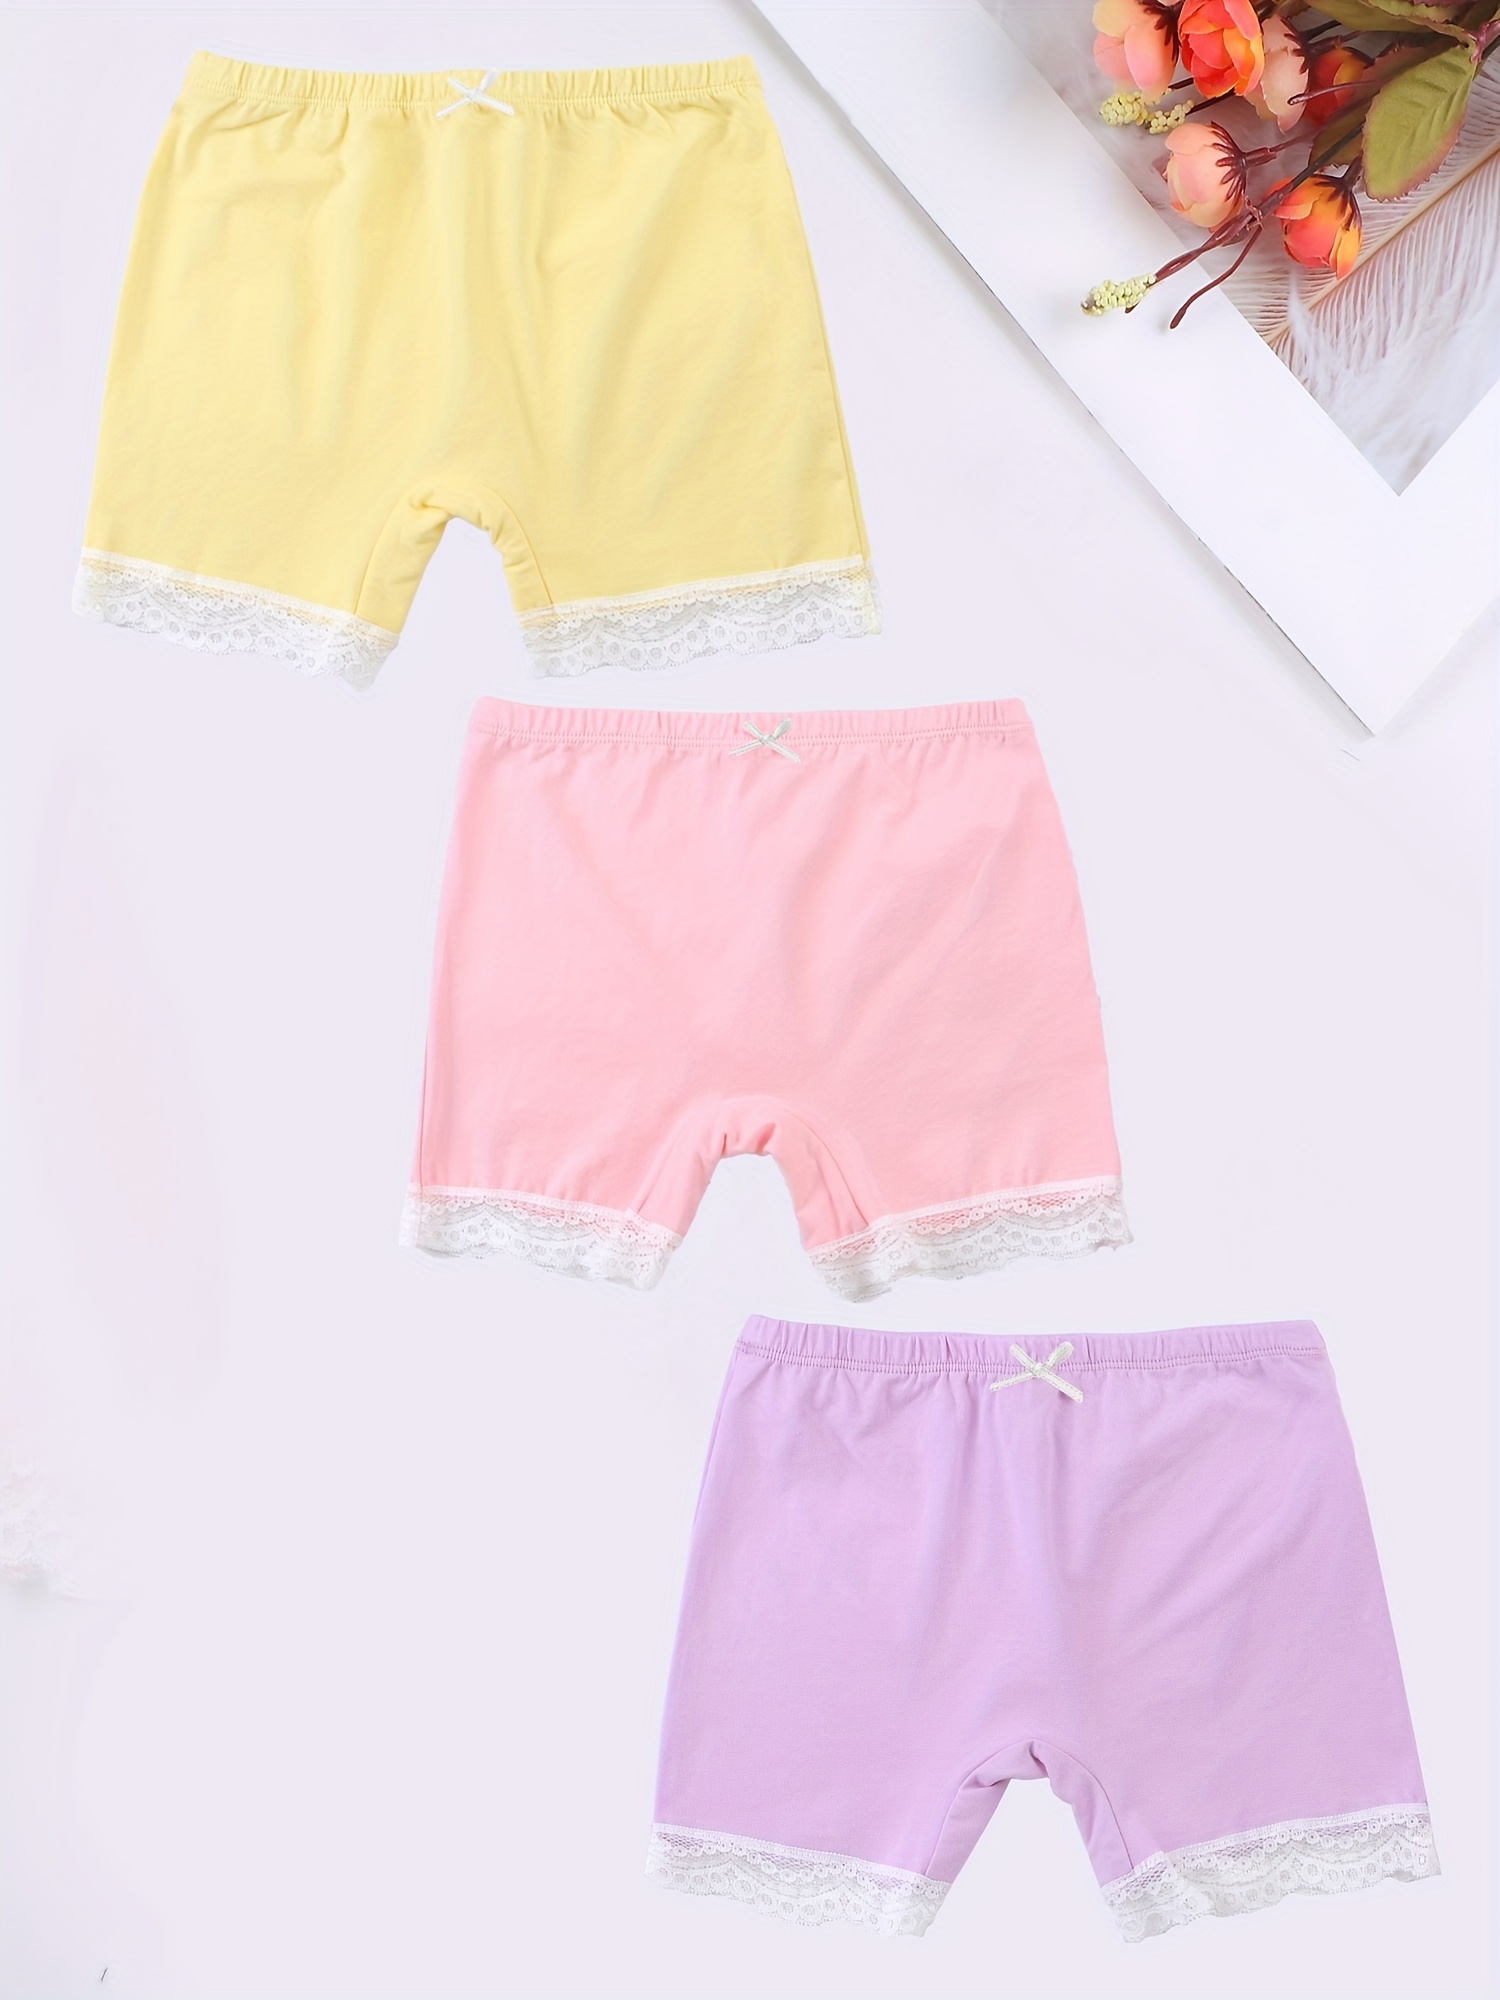 Kids Children Girls Underwear Cute Print Briefs Shorts Pants Cotton  Underwear Trunks 3PCS Girls Undies Shorts